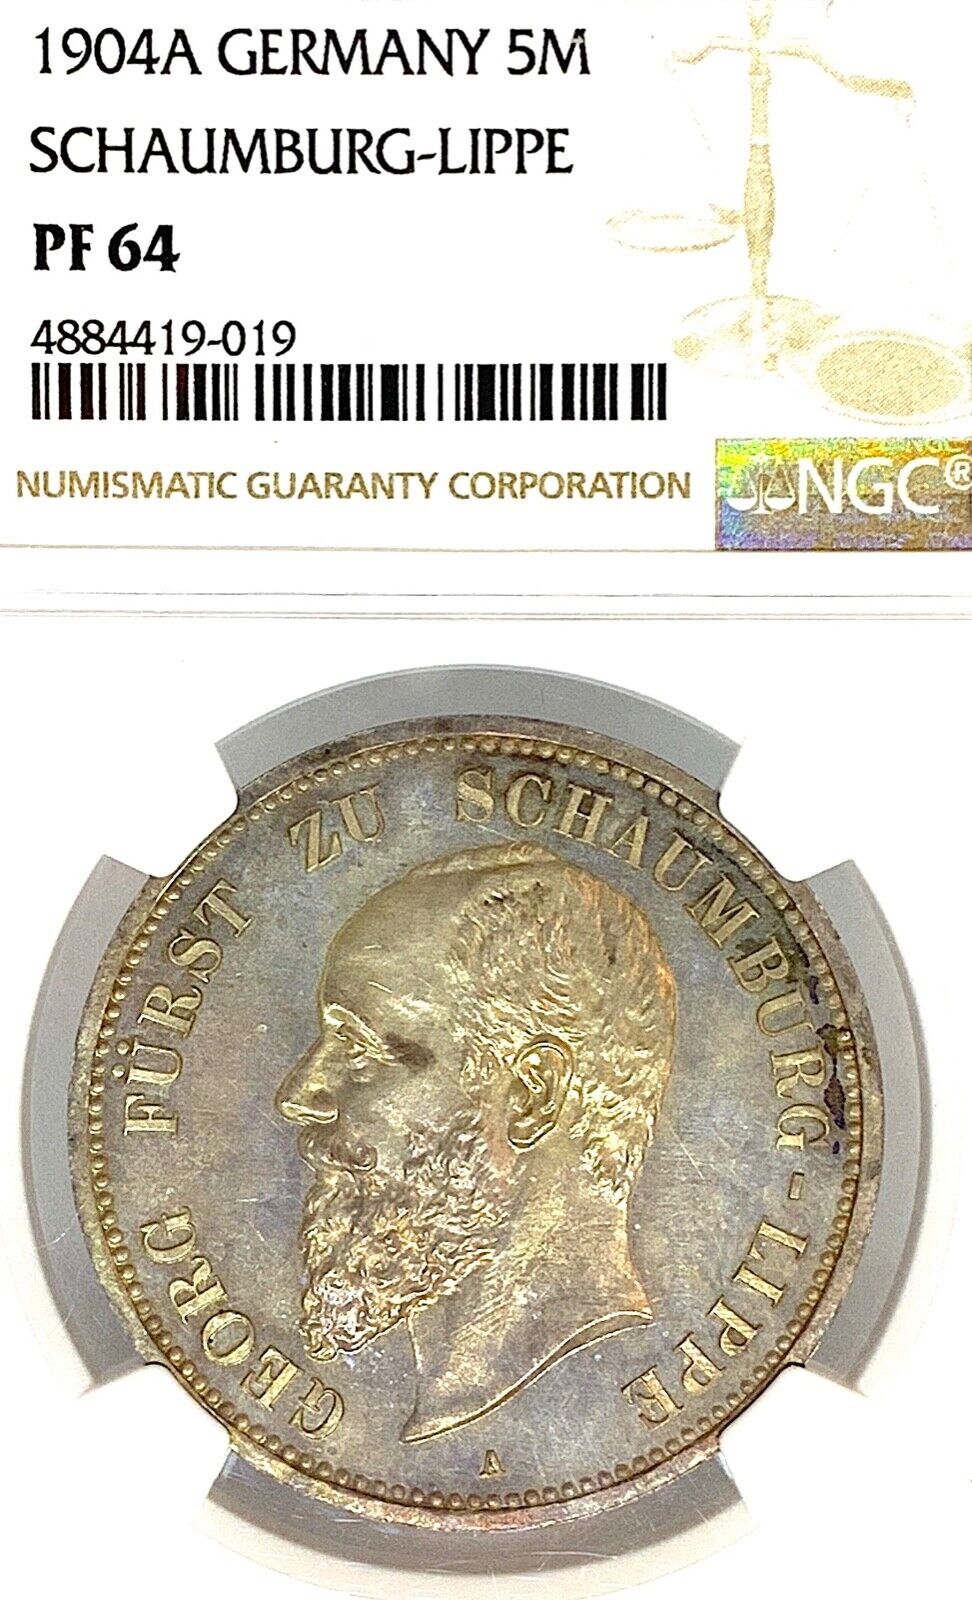 Deutsche States Schaumburg-Lippe 1904 5 znaczków Taler Thaler NGC Pr 64